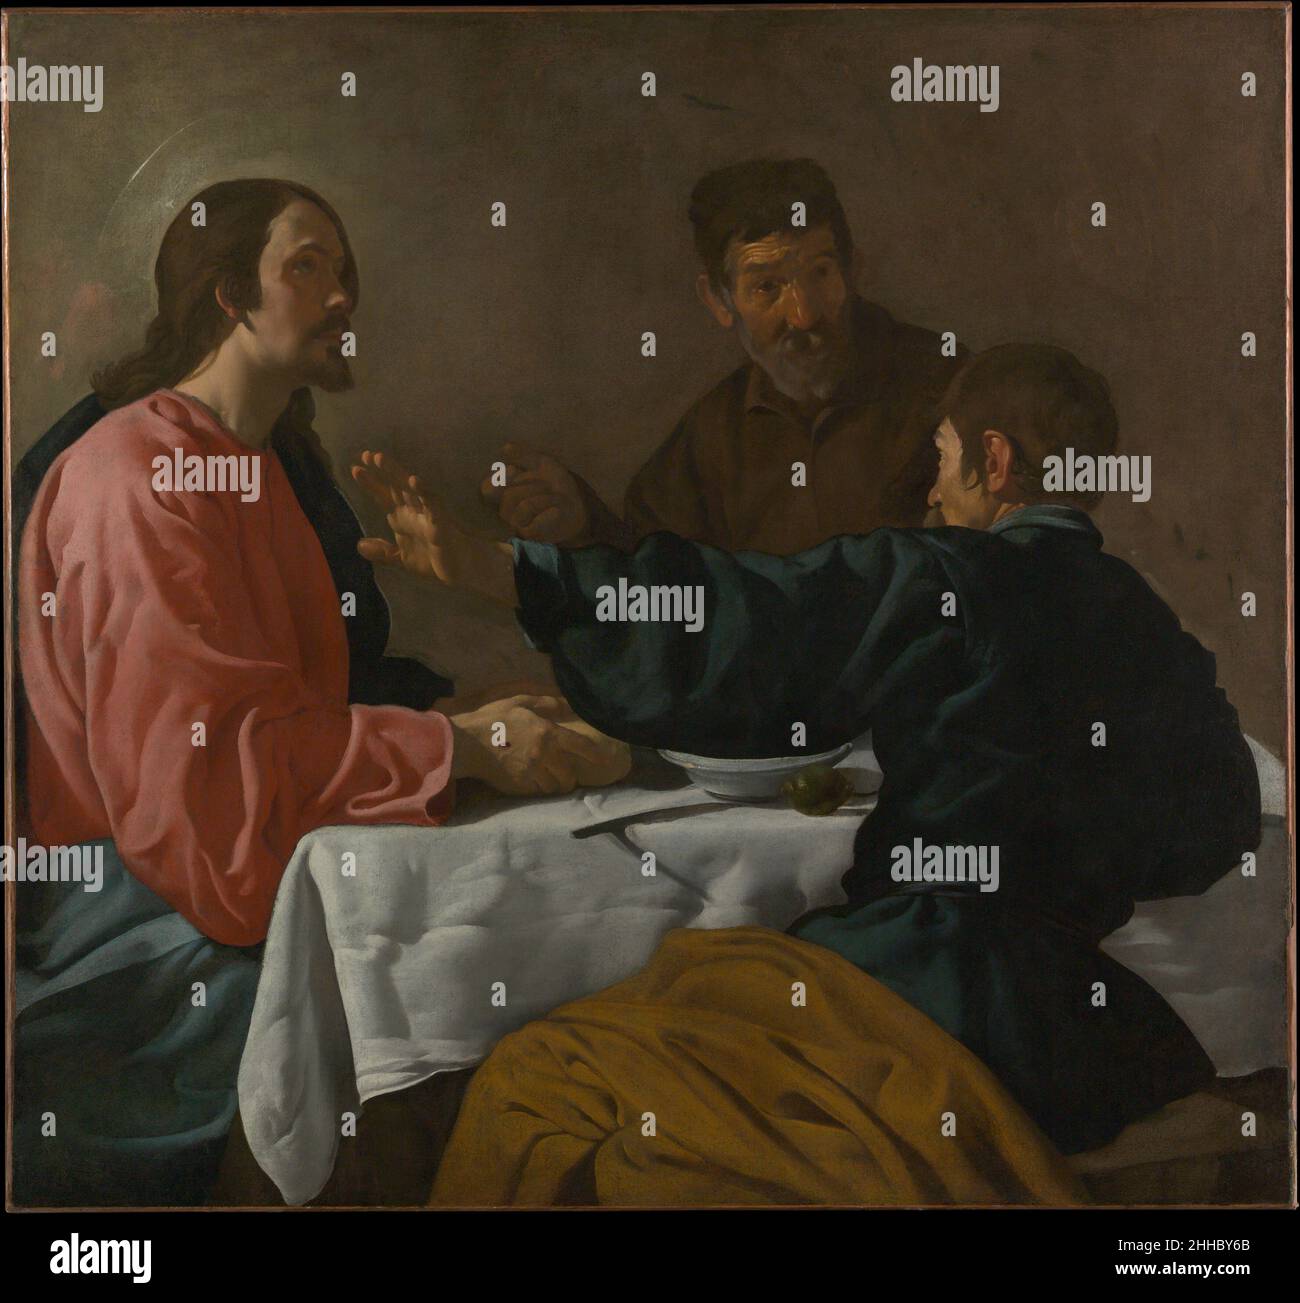 La Cène à Emmaus 1622–23 Velázquez (Diego Rodríguez de Silva y Velázquez) Espagnol ce tableau illustre le moment qui suit la Résurrection où Jésus est reconnu par deux disciples comme « il a pris du pain, béni et l'a brisé, et l'a remis à eux ».Le sujet a donné à Velázquez l'occasion d'explorer les contrastes dans les réactions par le geste, l'expression, et l'utilisation de l'éclairage dramatique.Il l'a peut-être peint à Séville, où il s'est entraîné pour la première fois, ou à Madrid, où il a déménagé en 1623.Velázquez s'inspire peut-être de l'œuvre du Caravaggio, qu'il aurait connue à travers des copies.Le dîner chez EM Banque D'Images